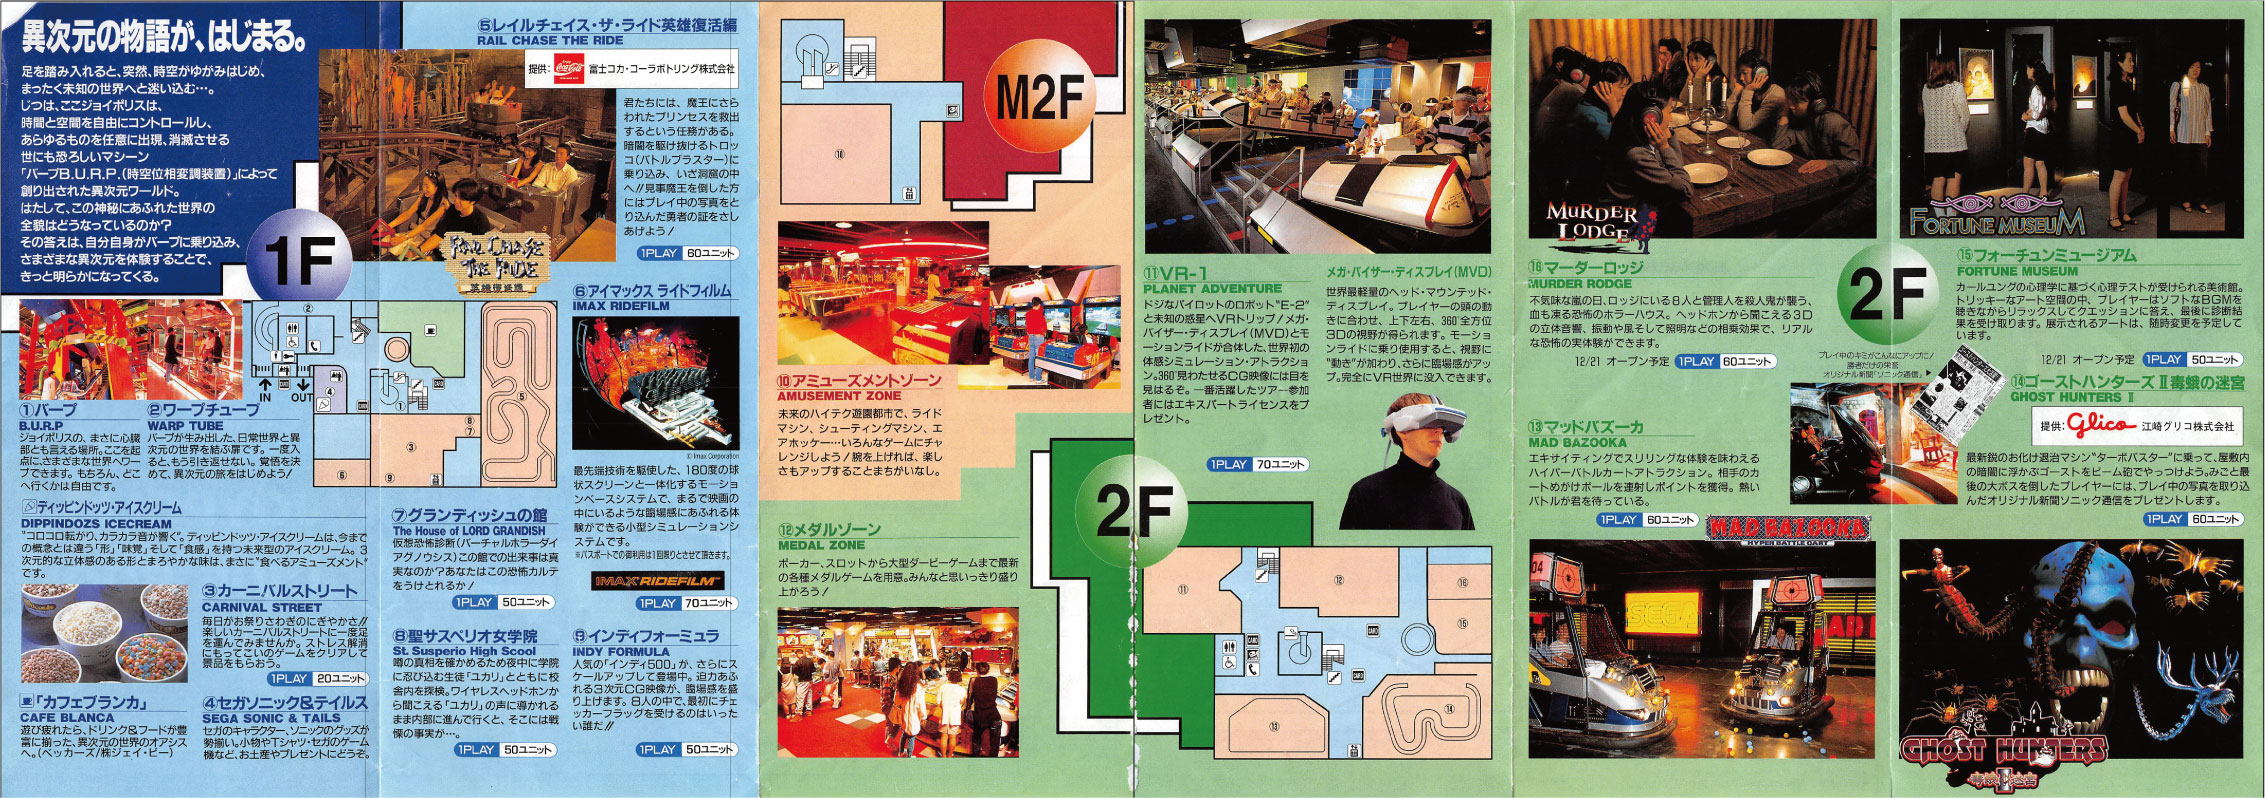 Segaはいつだって10年早い ー 時代を先取りしていた 横浜ジョイポリス のマップ復元 アトラクション紹介 ー 今はなき遊園地のマップ復元シリーズ7 てすろく旅行記